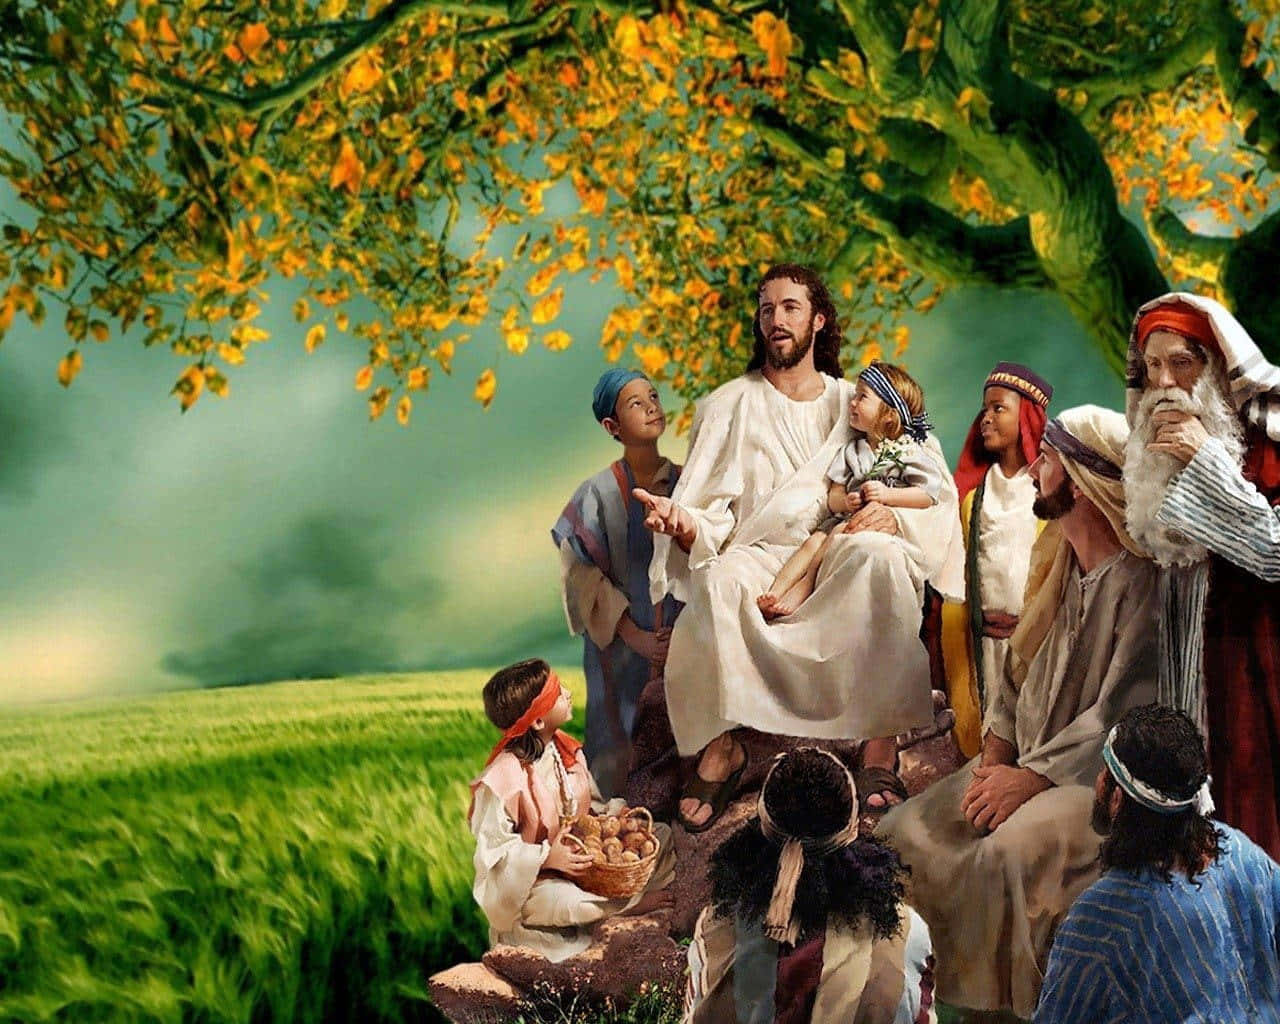 Jesu Kristus taler under en træbillede tapet